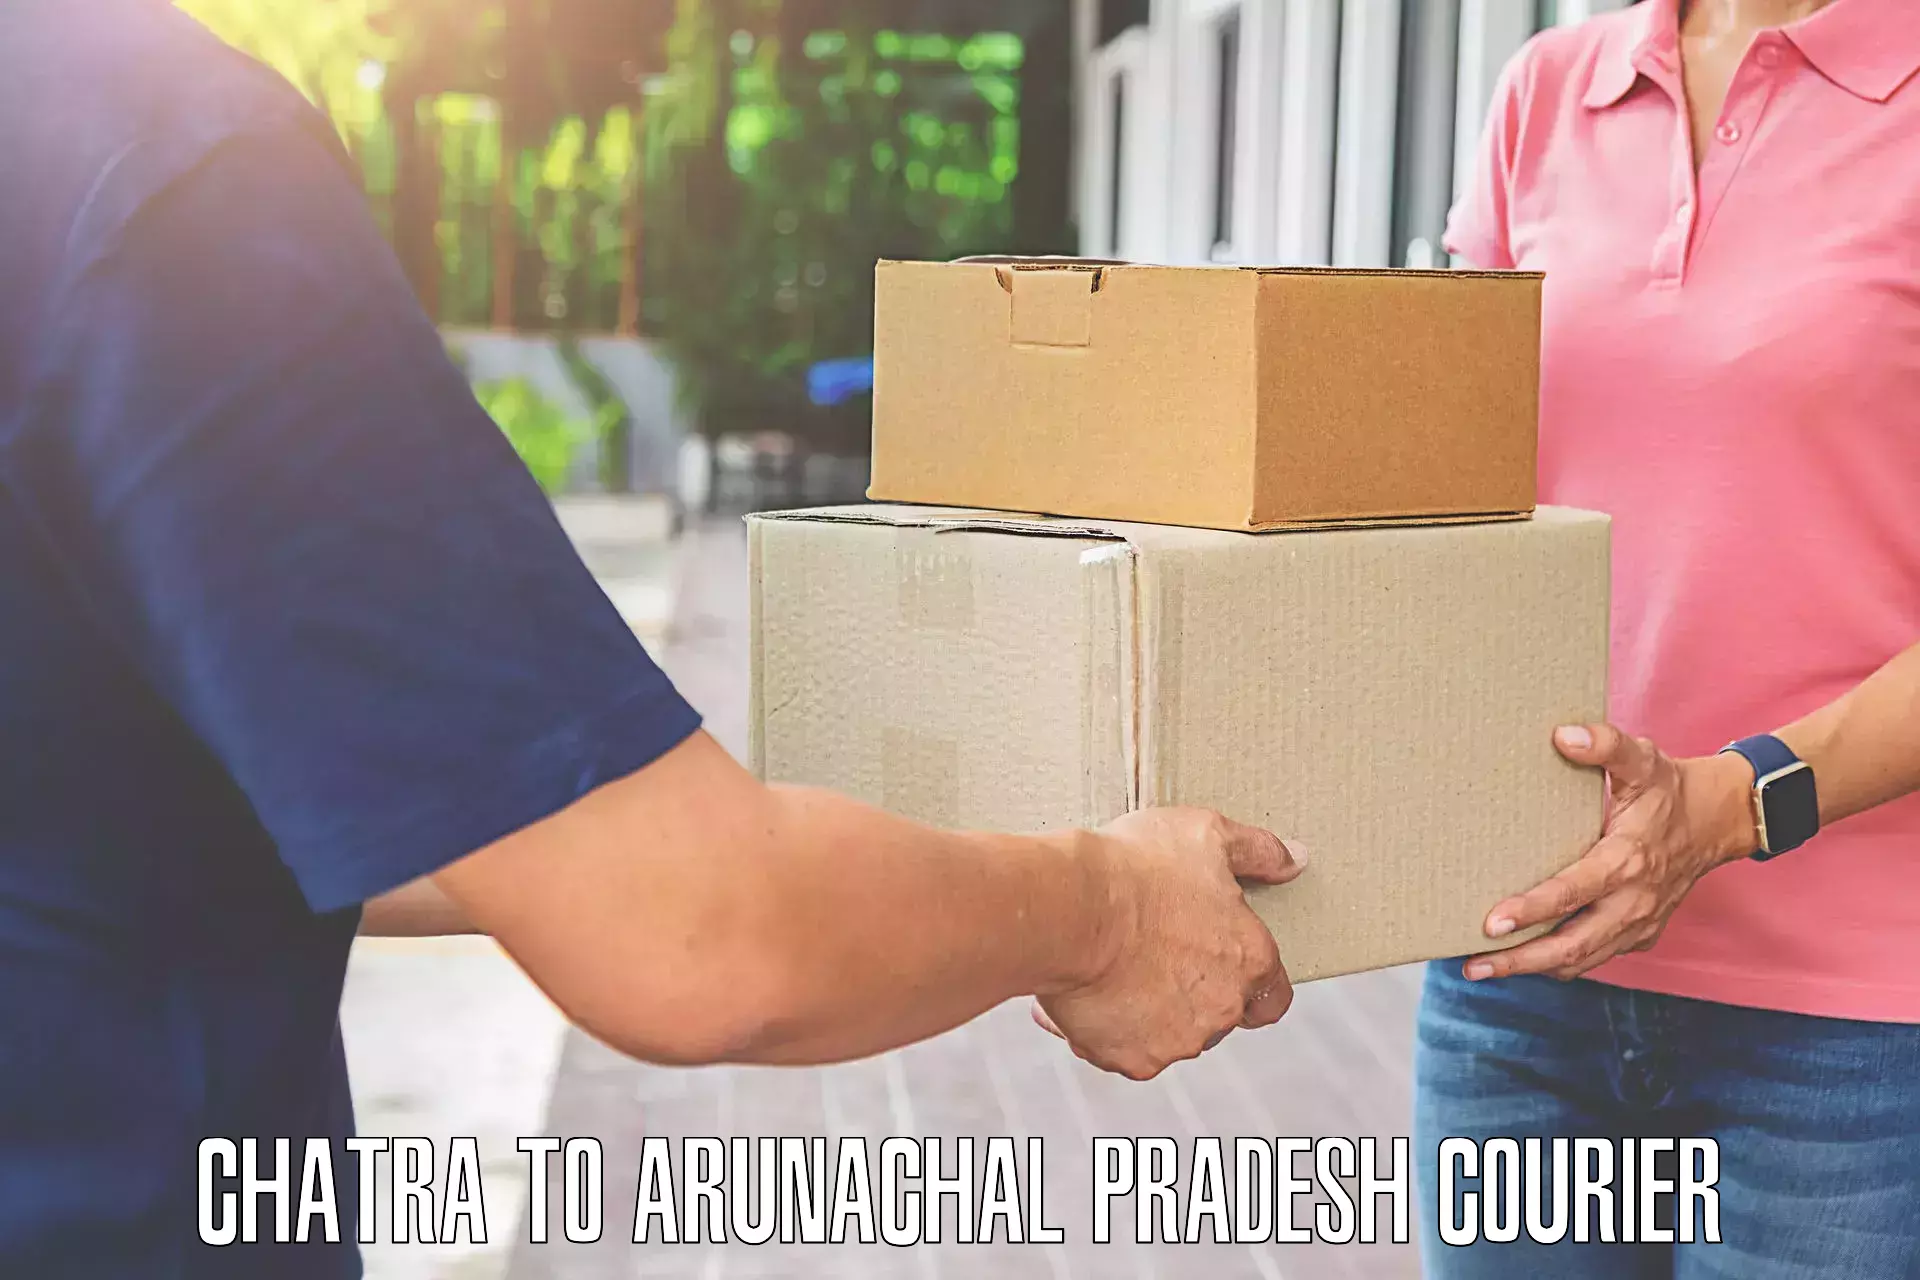 High-quality baggage shipment Chatra to Arunachal Pradesh